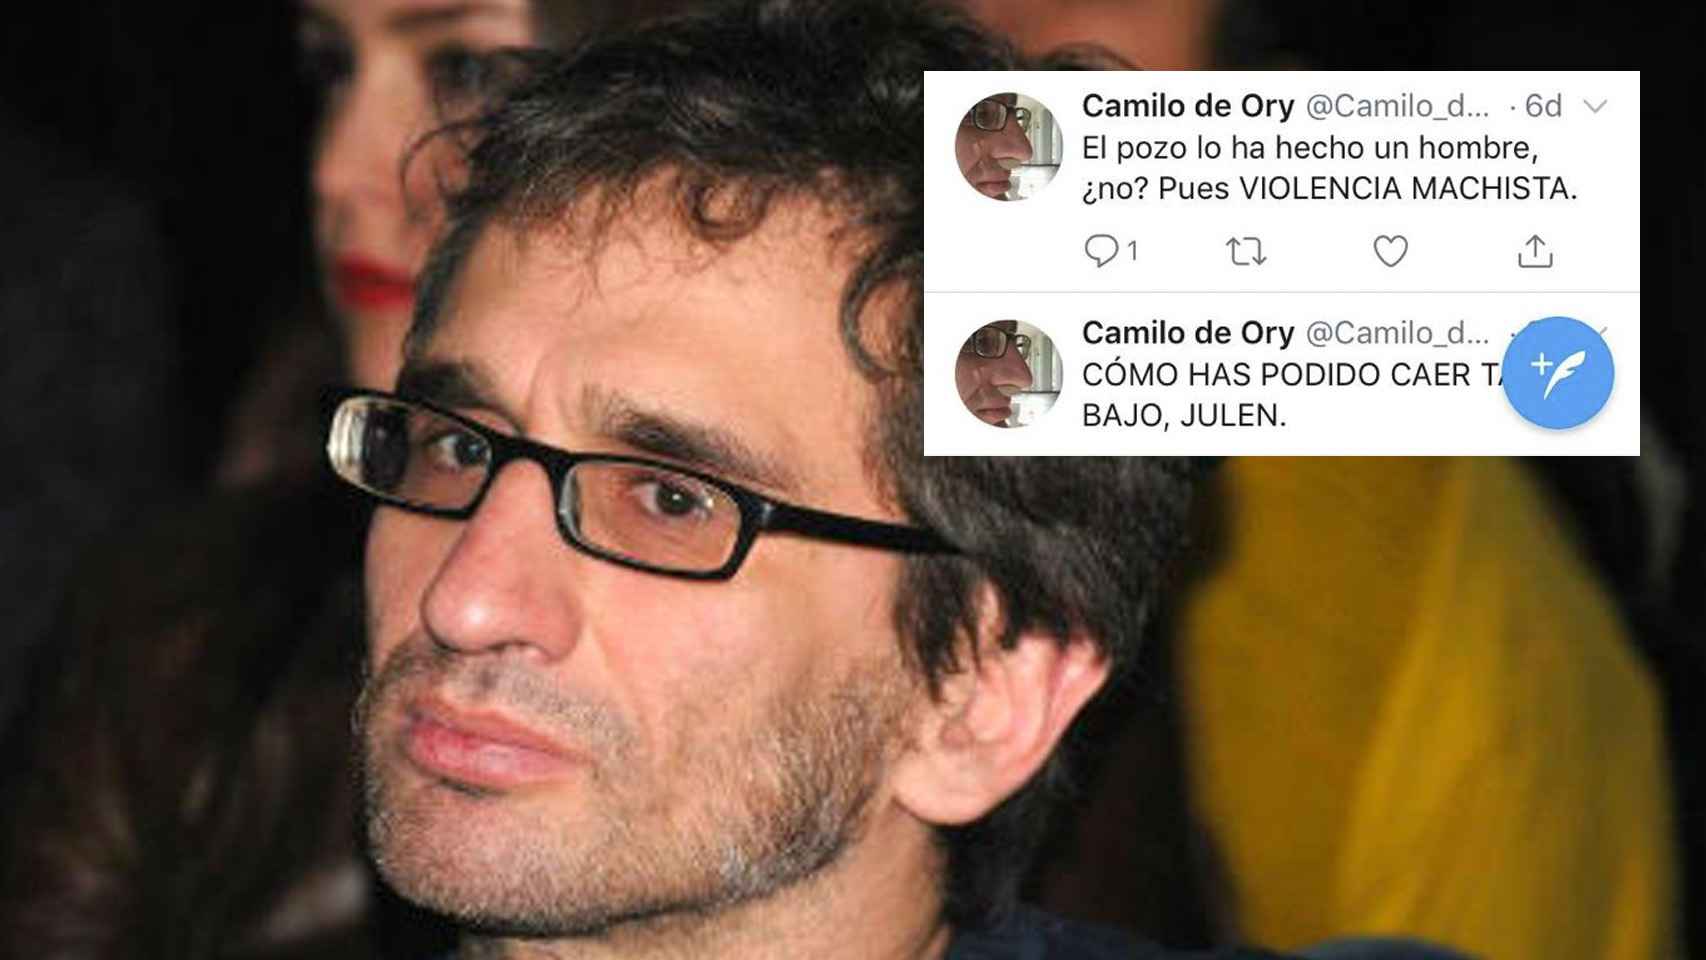 Los padres de Julen Roselló, el niño que murió al caer a un pozo en una localidad malagueña, han denunciado al poeta Camilo de Ory por sus tuits ofensivos sobre el menor y su familia.